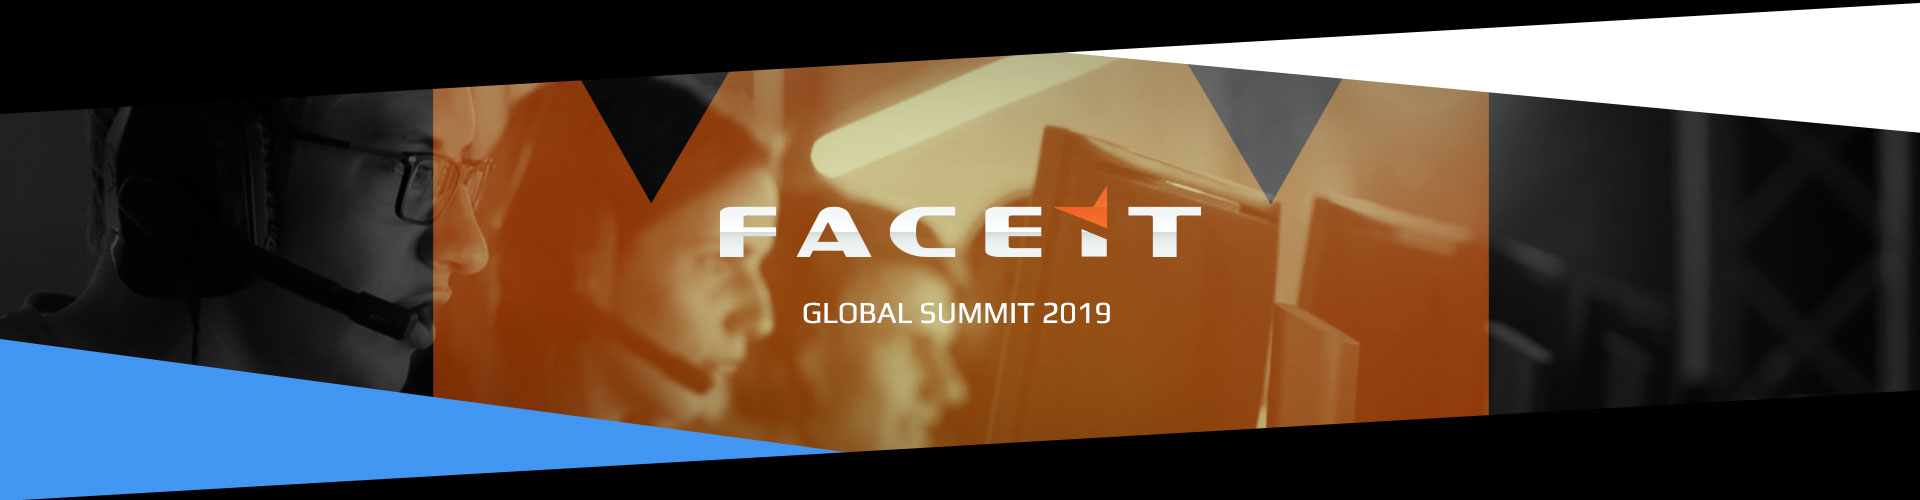 Faceit Global Summit 2. Päivä